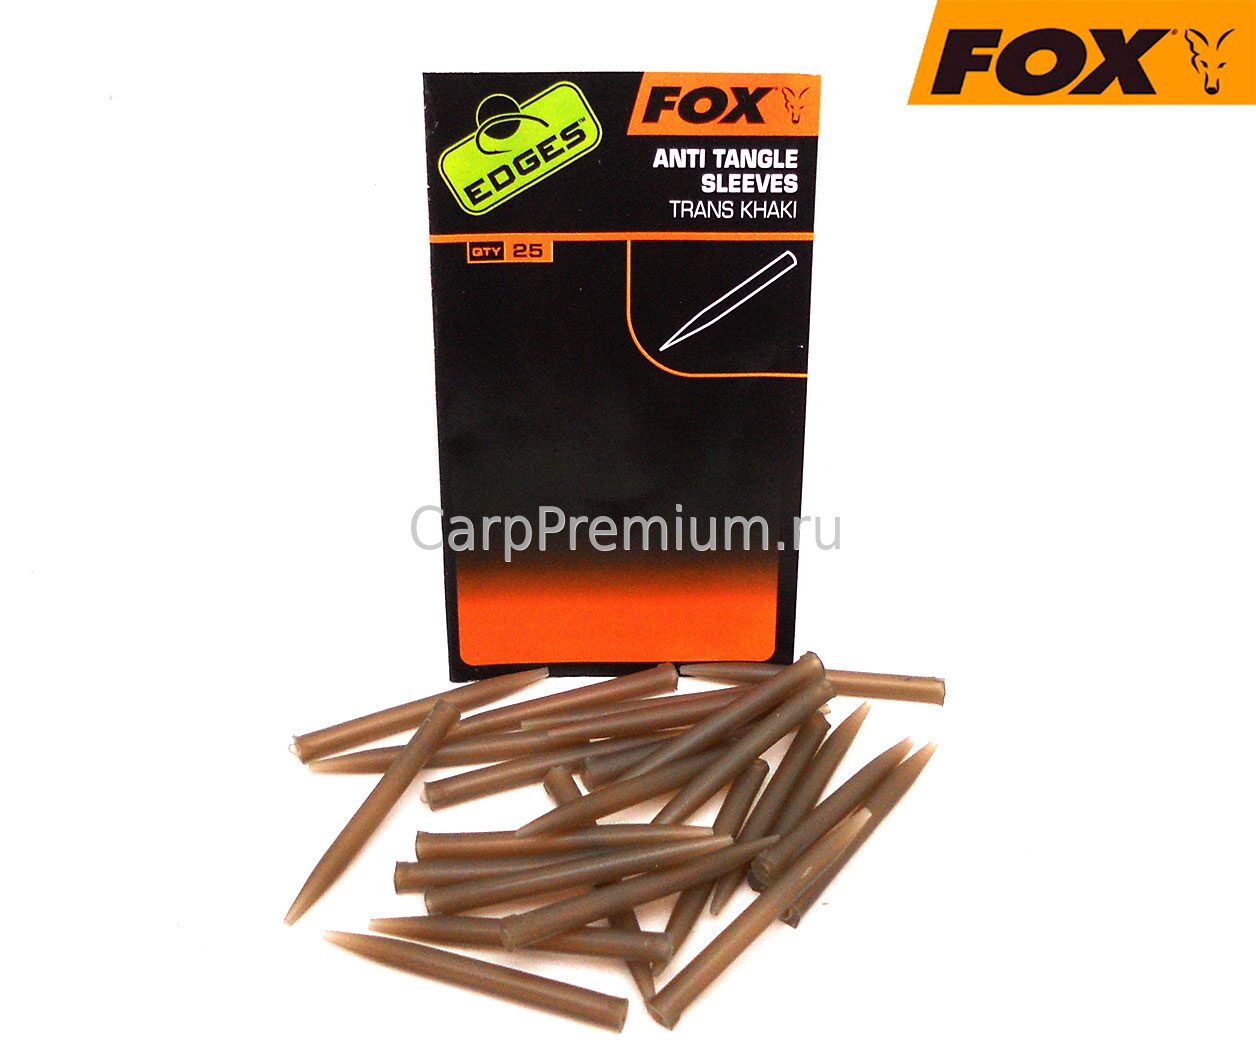 Отводчики для поводка Fox (Фокс) - EDGES Anti Tangle Sleeves, 25 шт